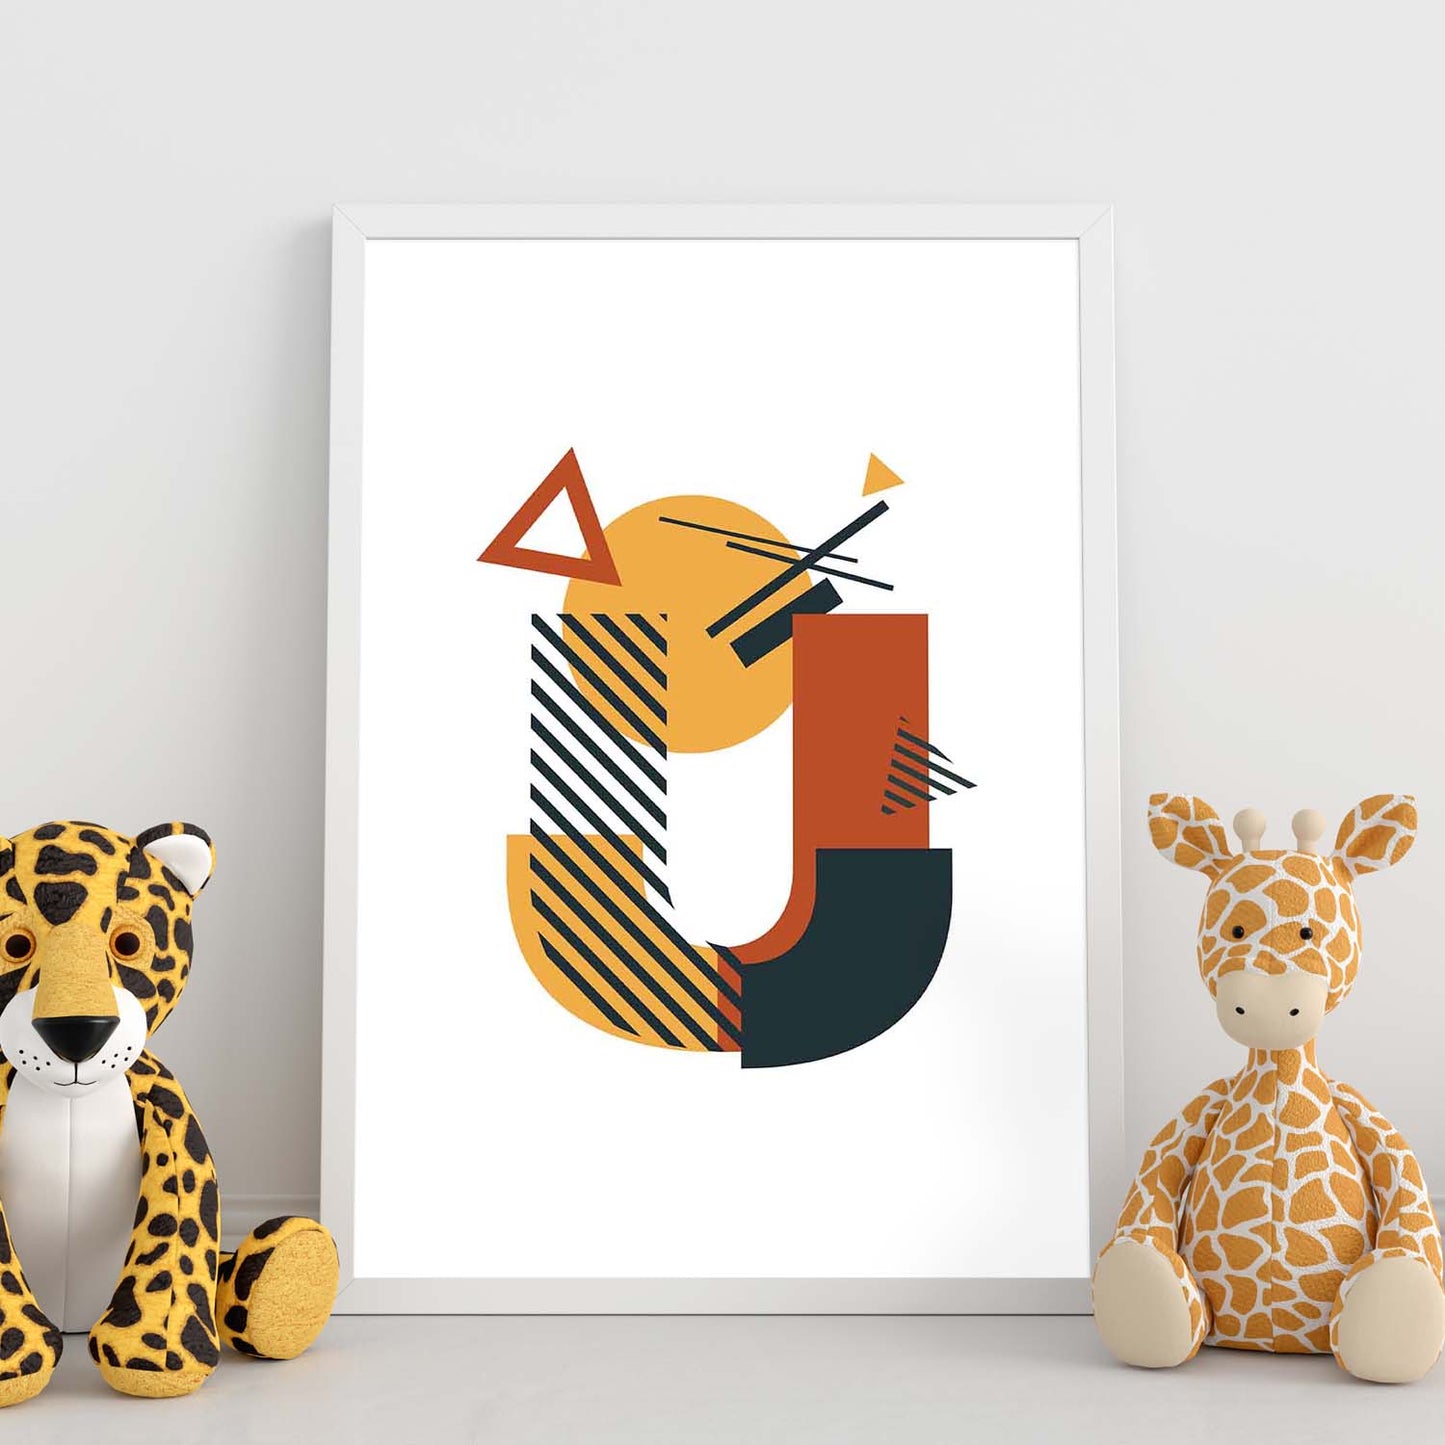 Poster de letra U. Lámina estilo Geometria con formas con imágenes del alfabeto.-Artwork-Nacnic-Nacnic Estudio SL